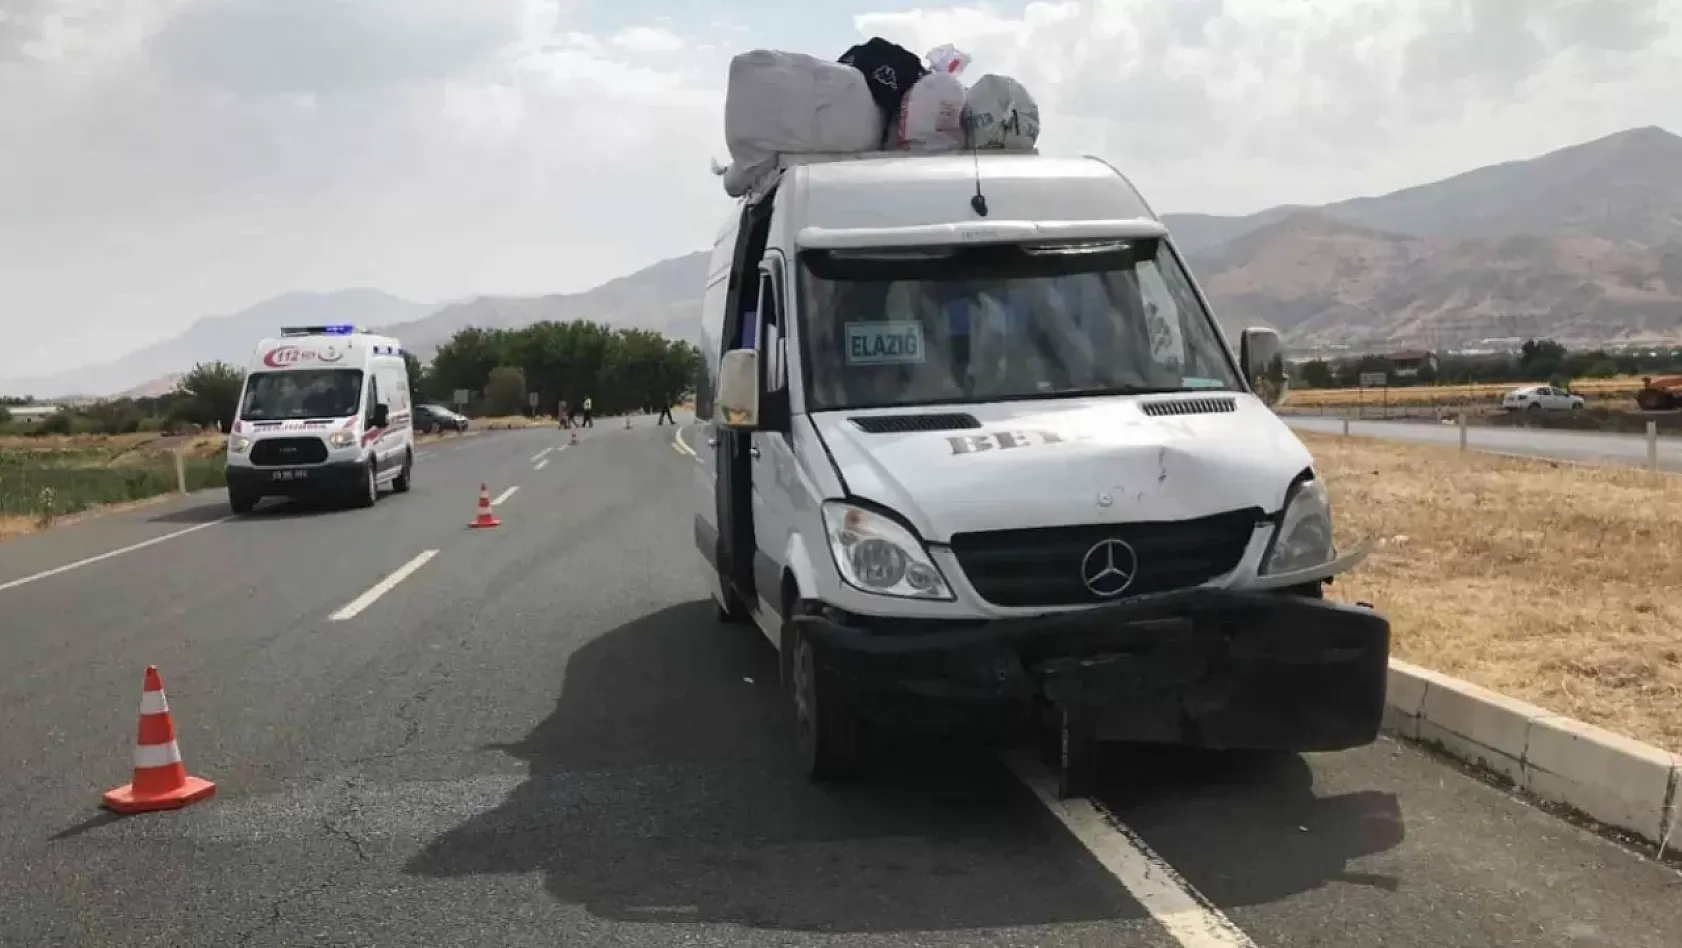 Elazığ - Bingöl Yolunda Trafik Kazası